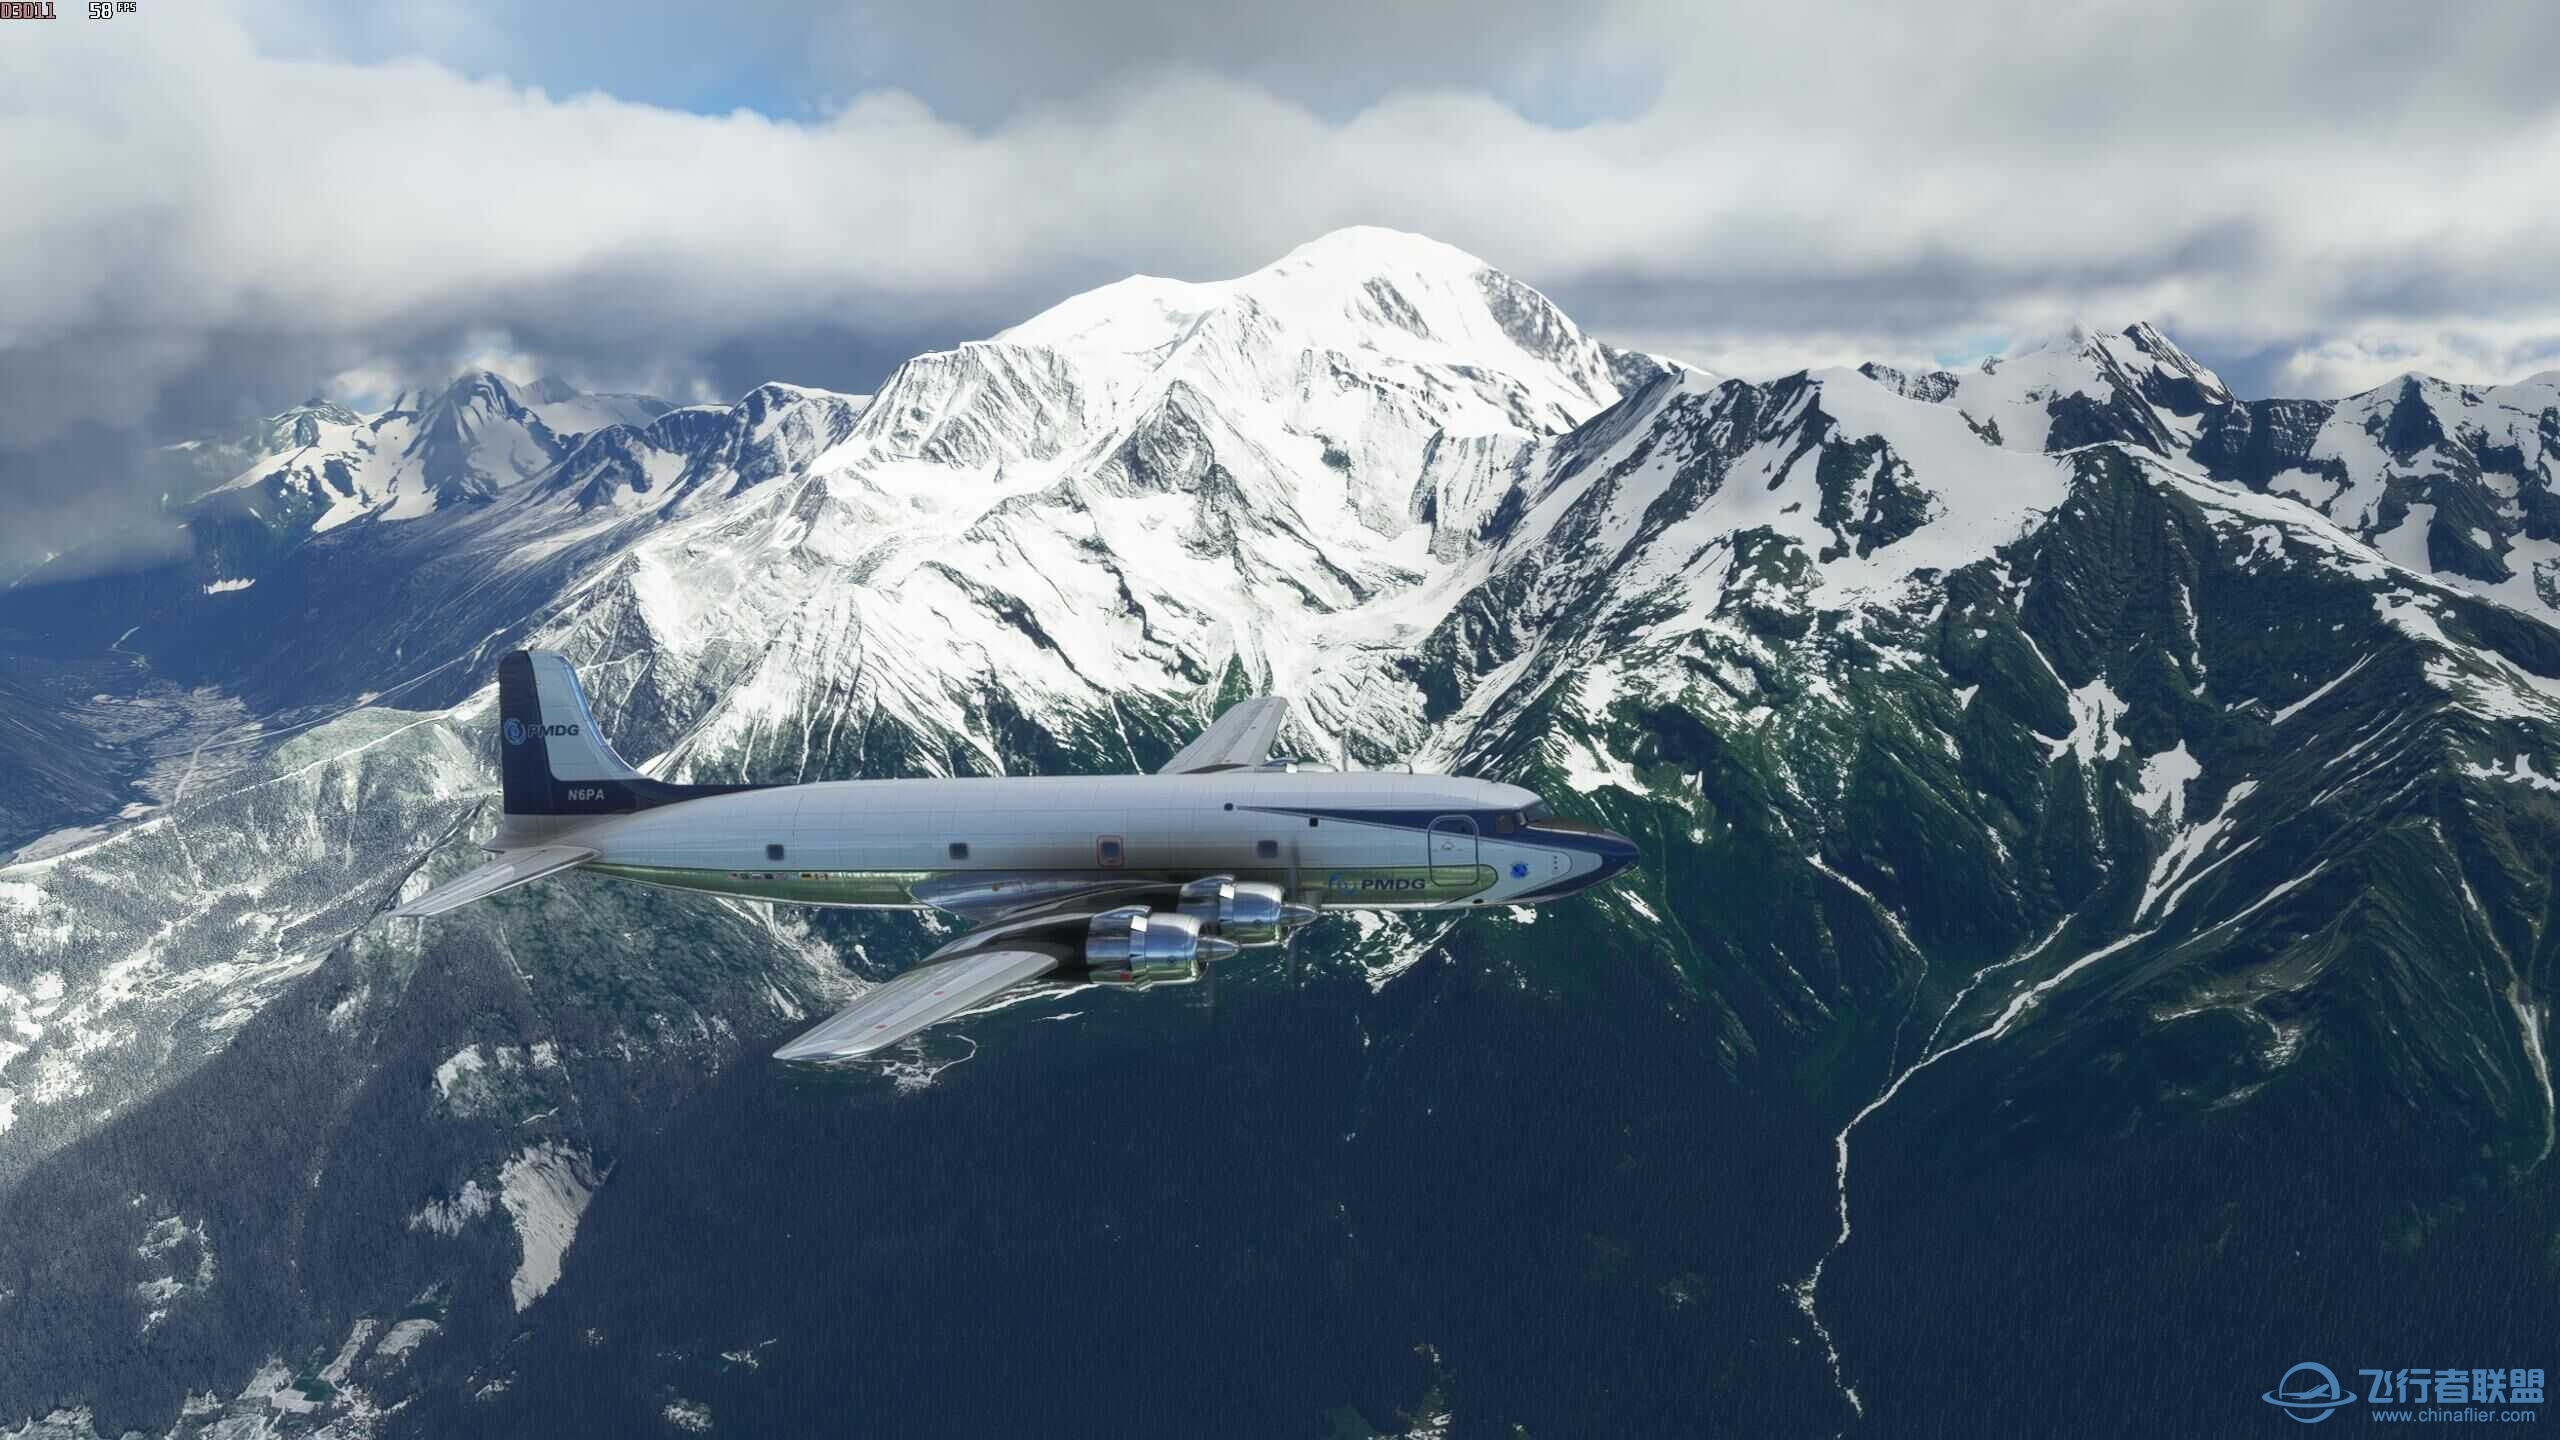 xplane11和微软模拟飞行2020哪个体验感好？-8143 